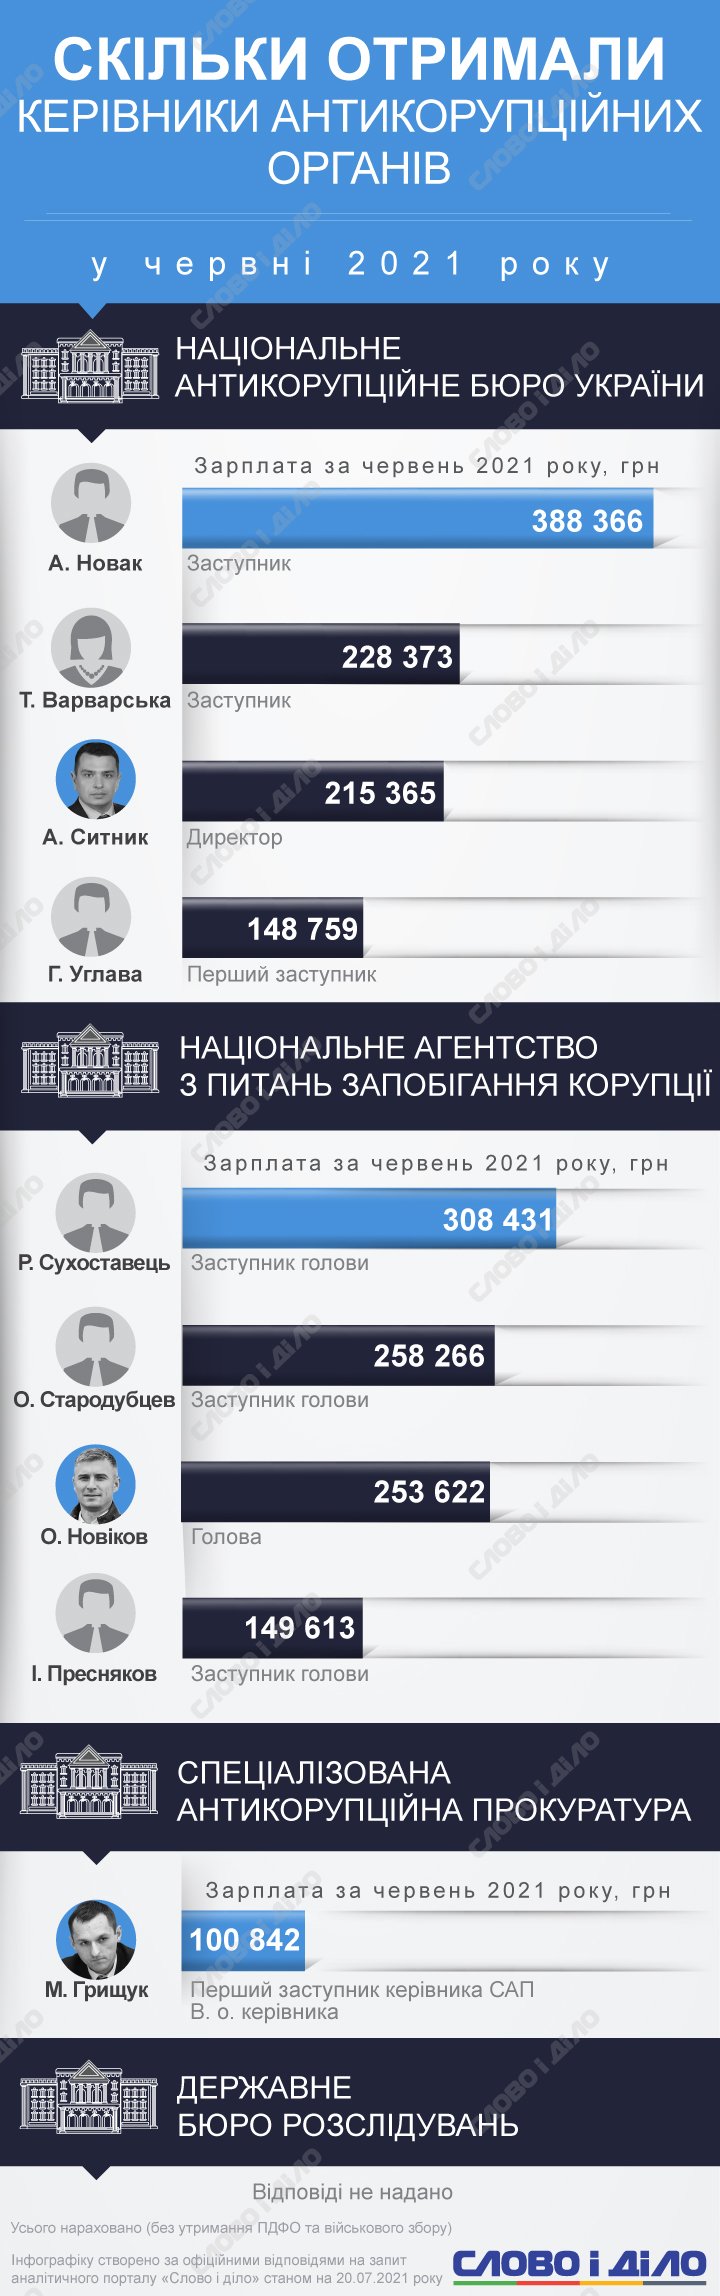 Сколько в июне заработал директор НАБУ Артем Сытник, глава НАПК Александр Новиков и их заместители – на инфографике.